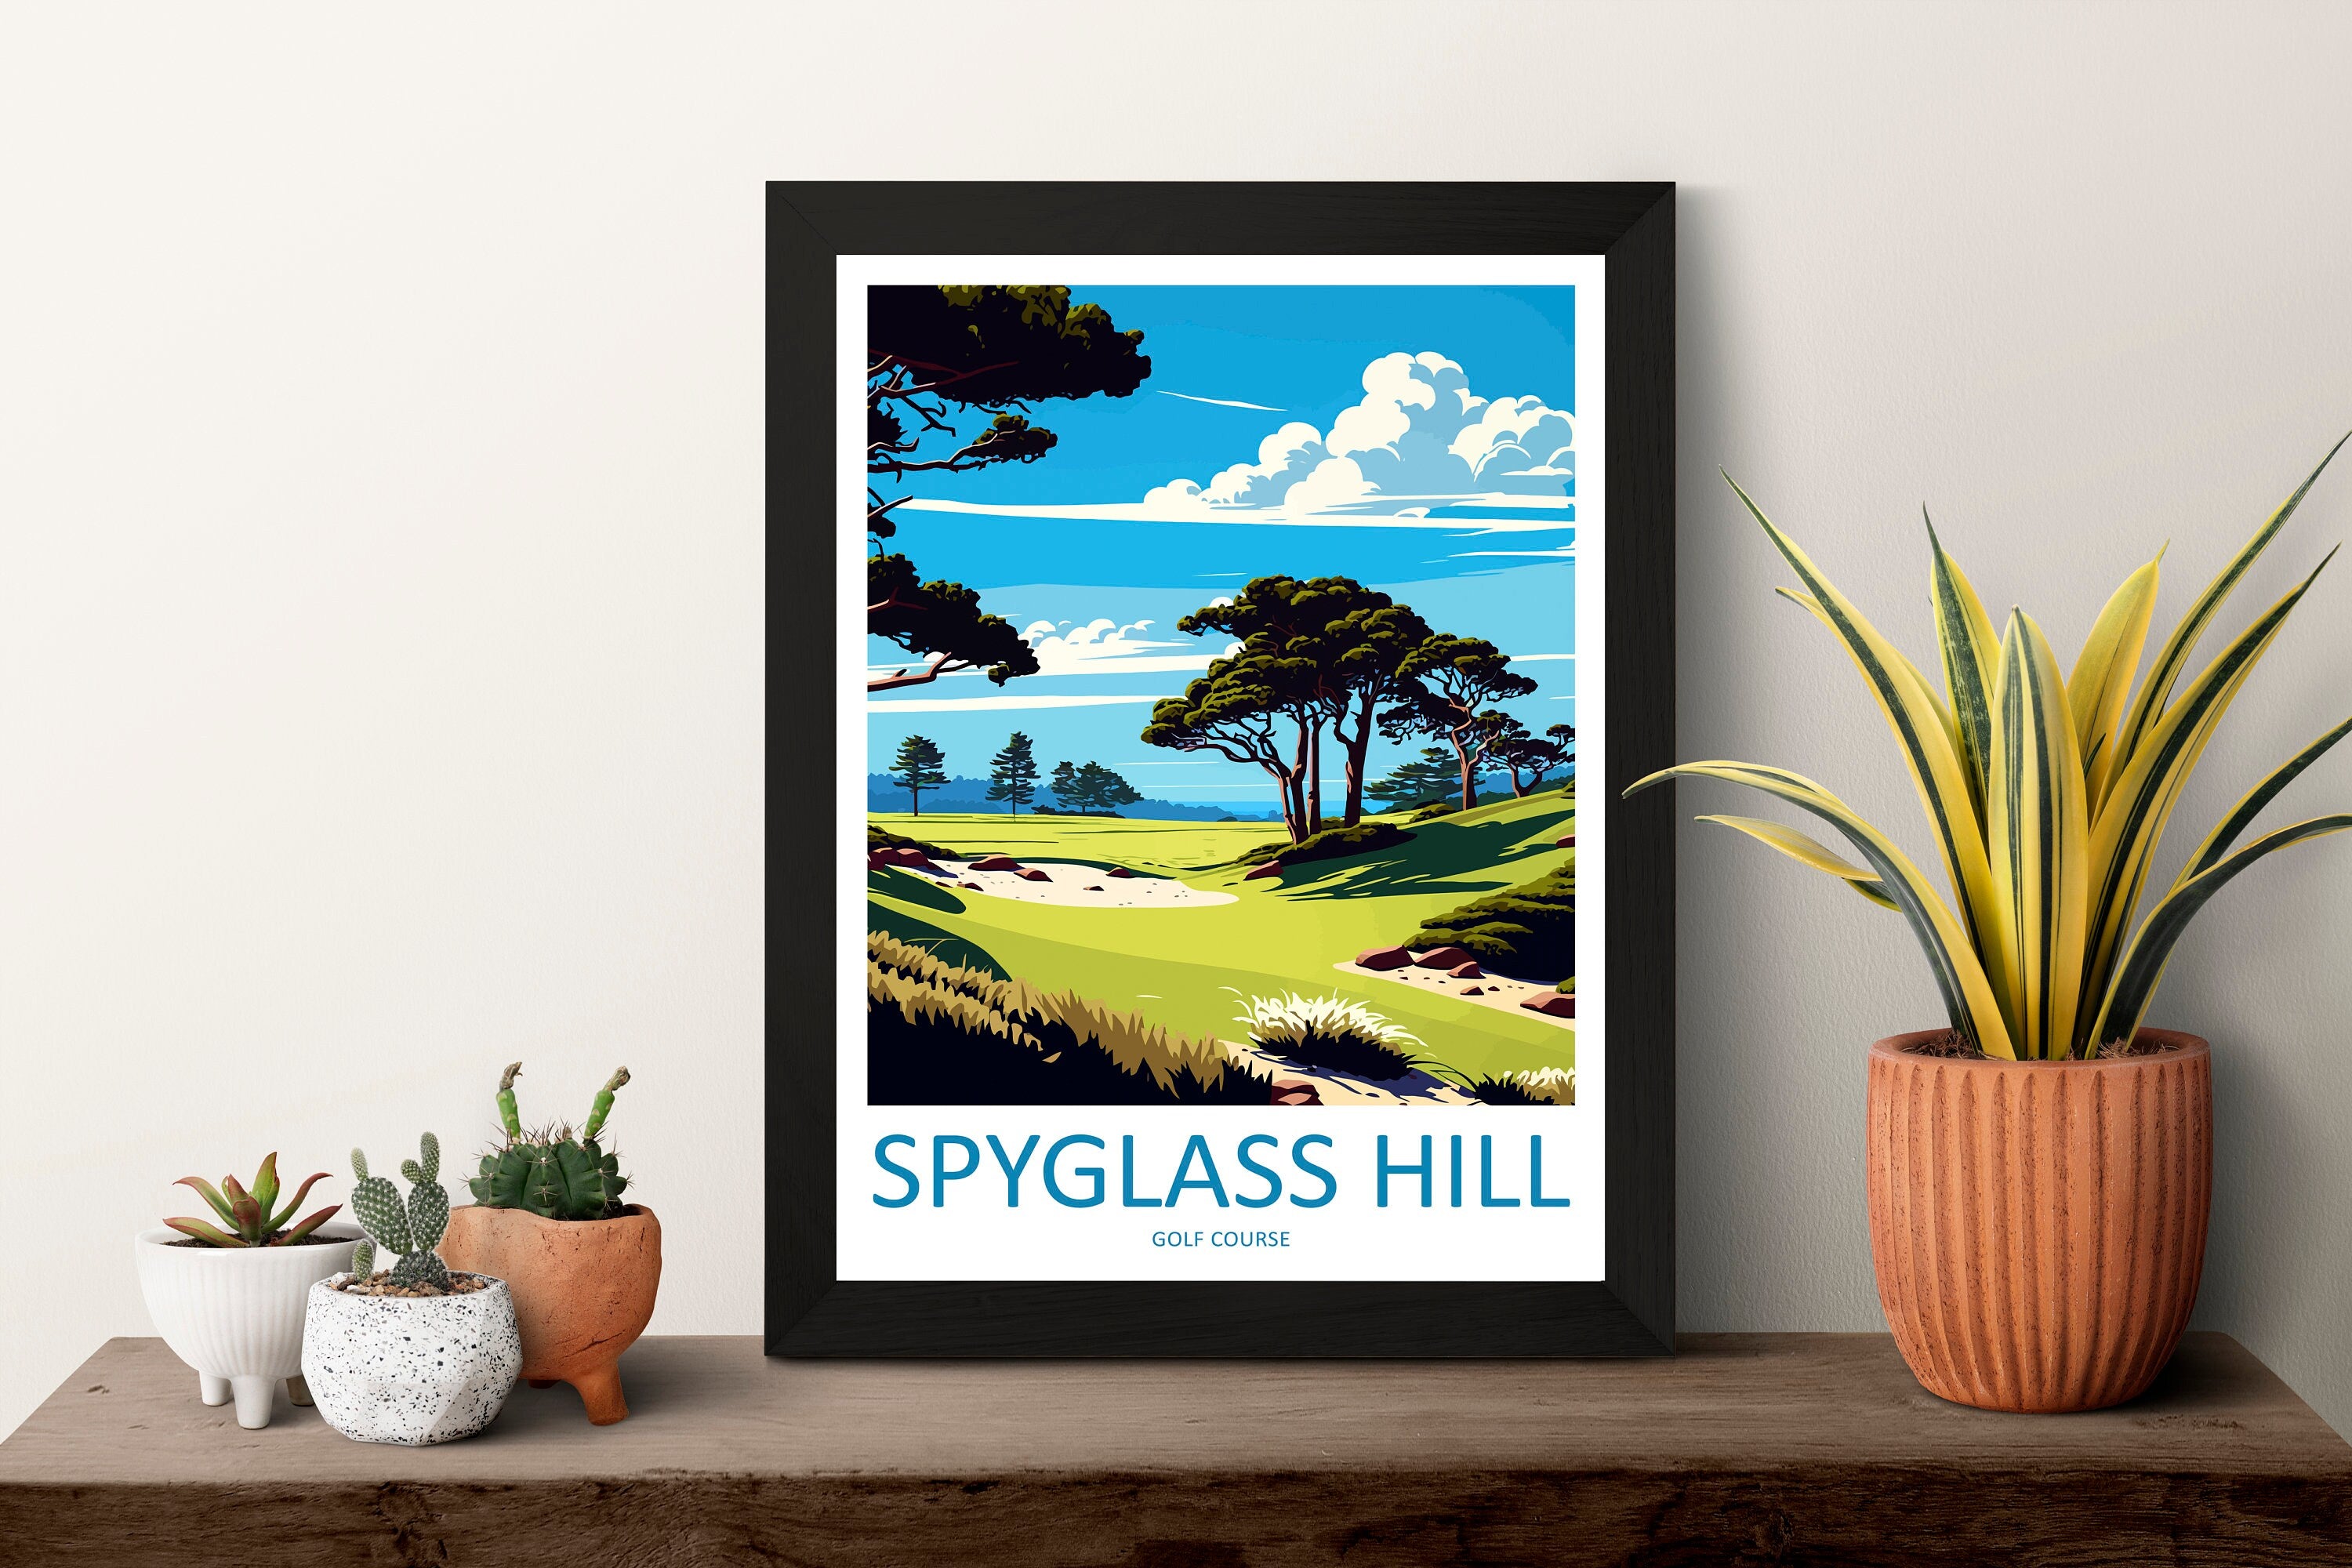 Spyglass Hill Golf Course Travel Print Wall Art Spyglass Hill Wall Hanging Home Décor Spyglass Hill Gift Art Lovers Golf Art Poster